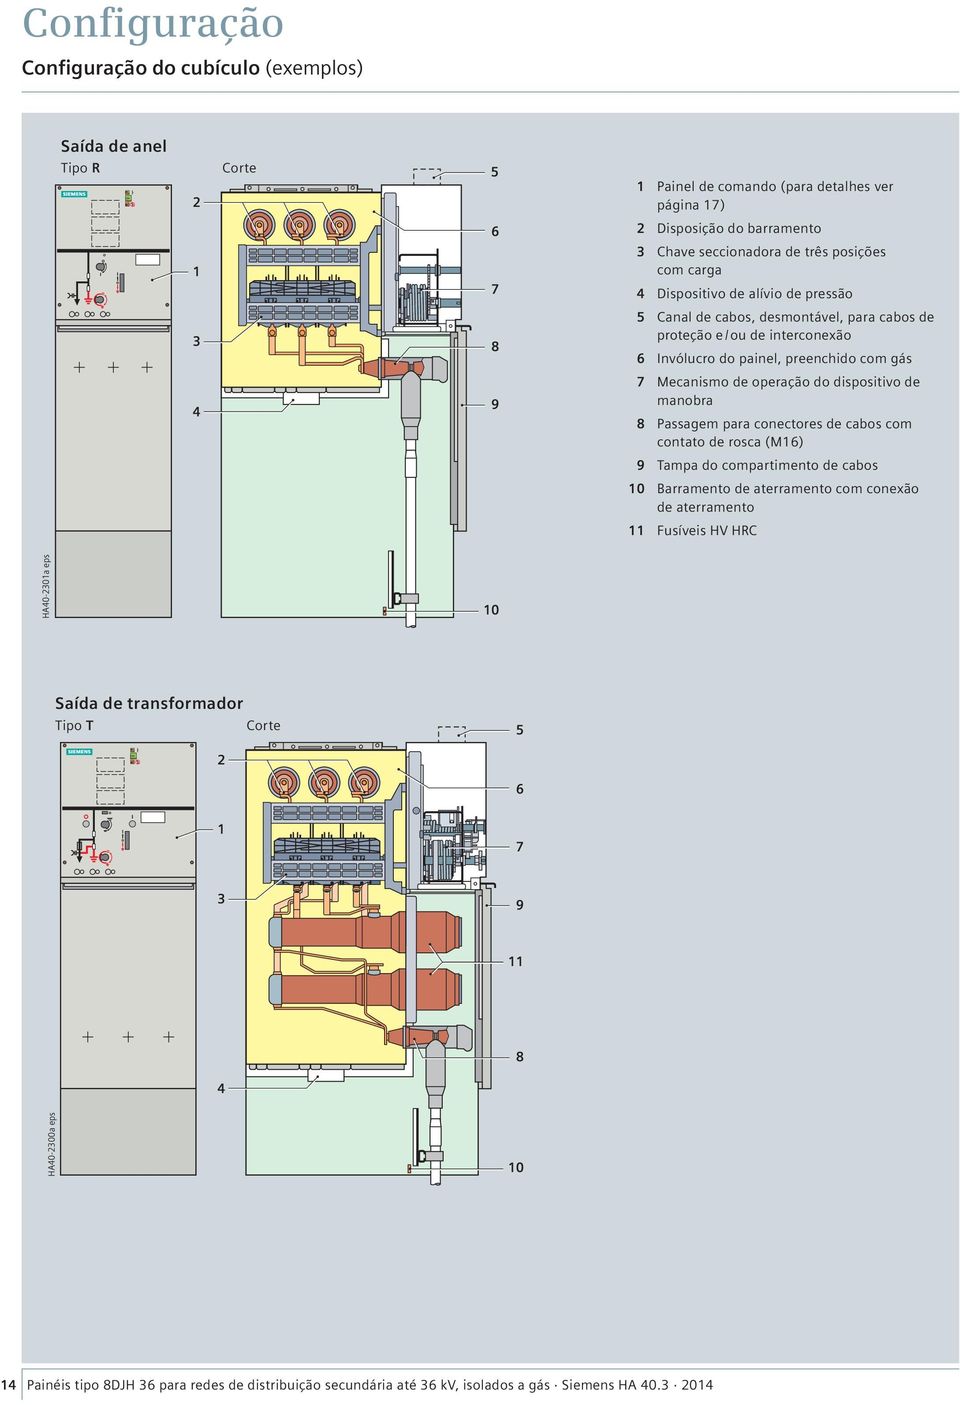 Mecanismo de operação do dispositivo de manobra 8 Passagem para conectores de cabos com contato de rosca (M16) 9 Tampa do compartimento de cabos 10 Barramento de aterramento com